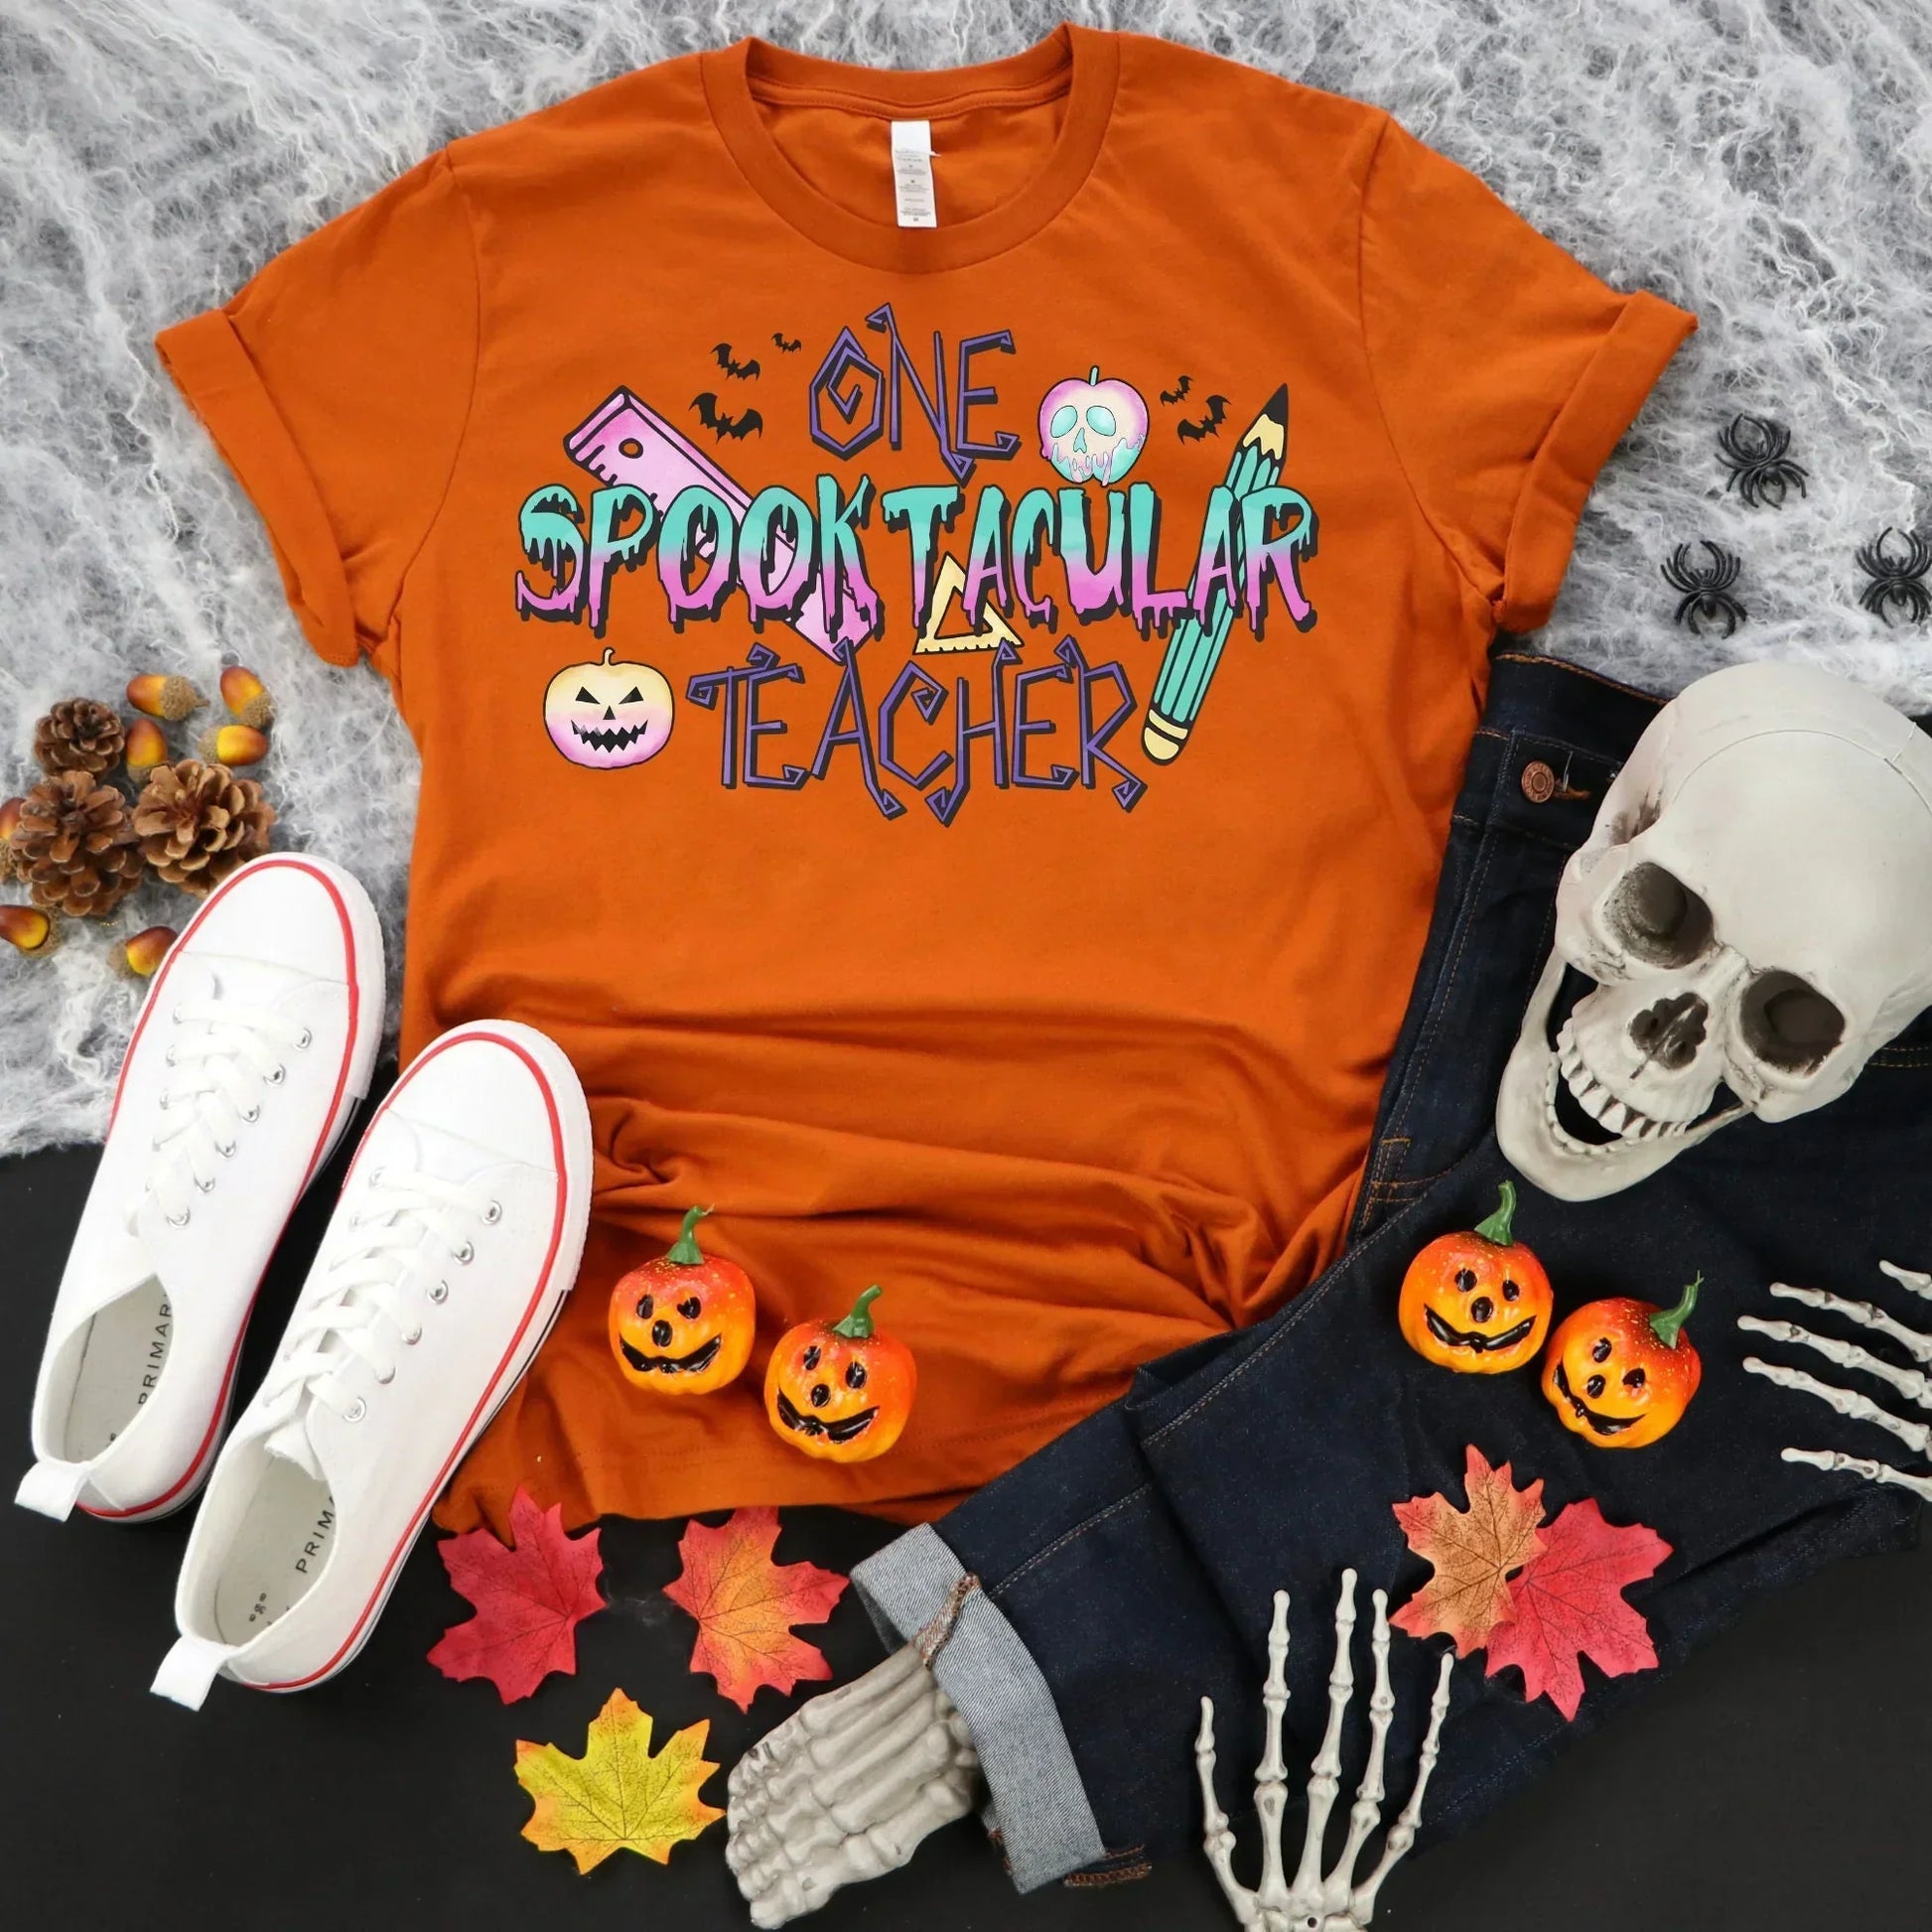 Halloween Teacher Shirt, Preschool Teacher Sweatshirt, Trick or Teach, Spooky Season Sweater, Pumpkin Tshirt, Elementary School Teacher Gift HMDesignStudioUS